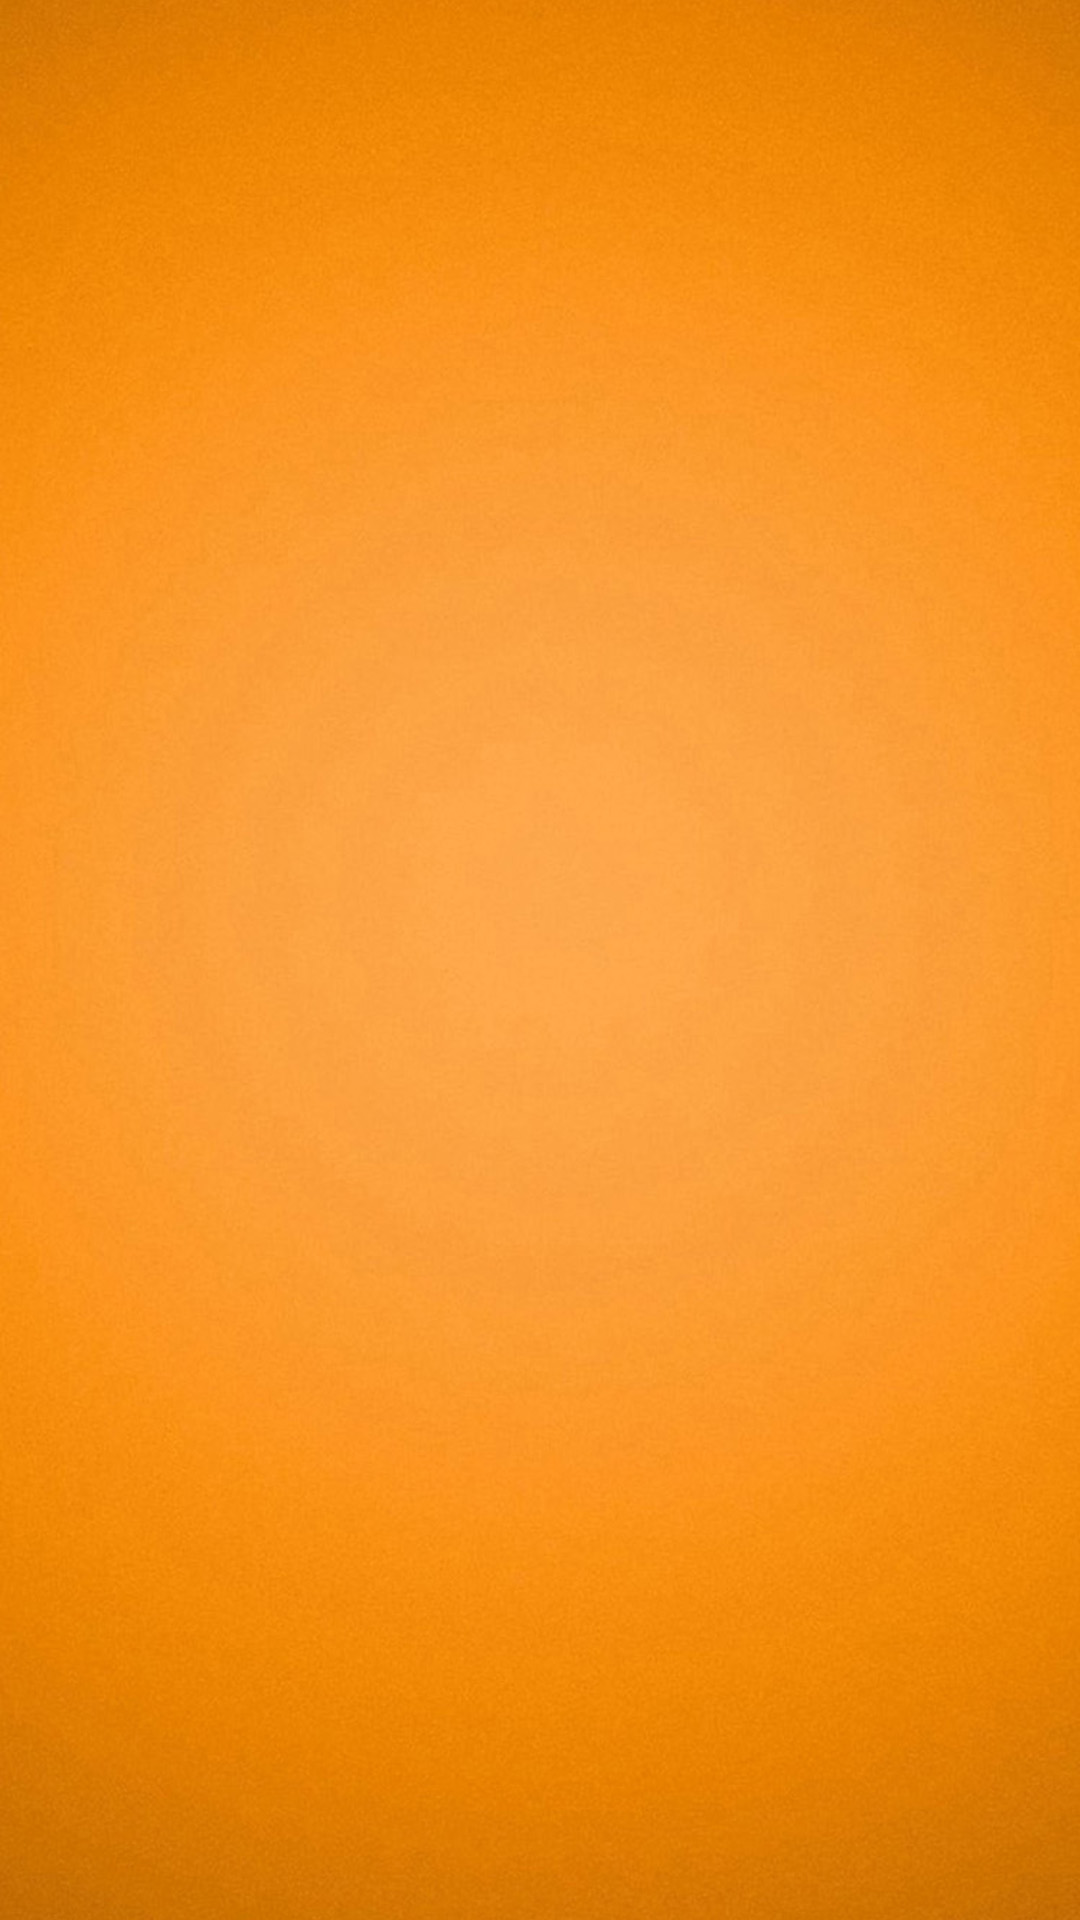 19年のベスト Iphone 壁紙 オレンジ色